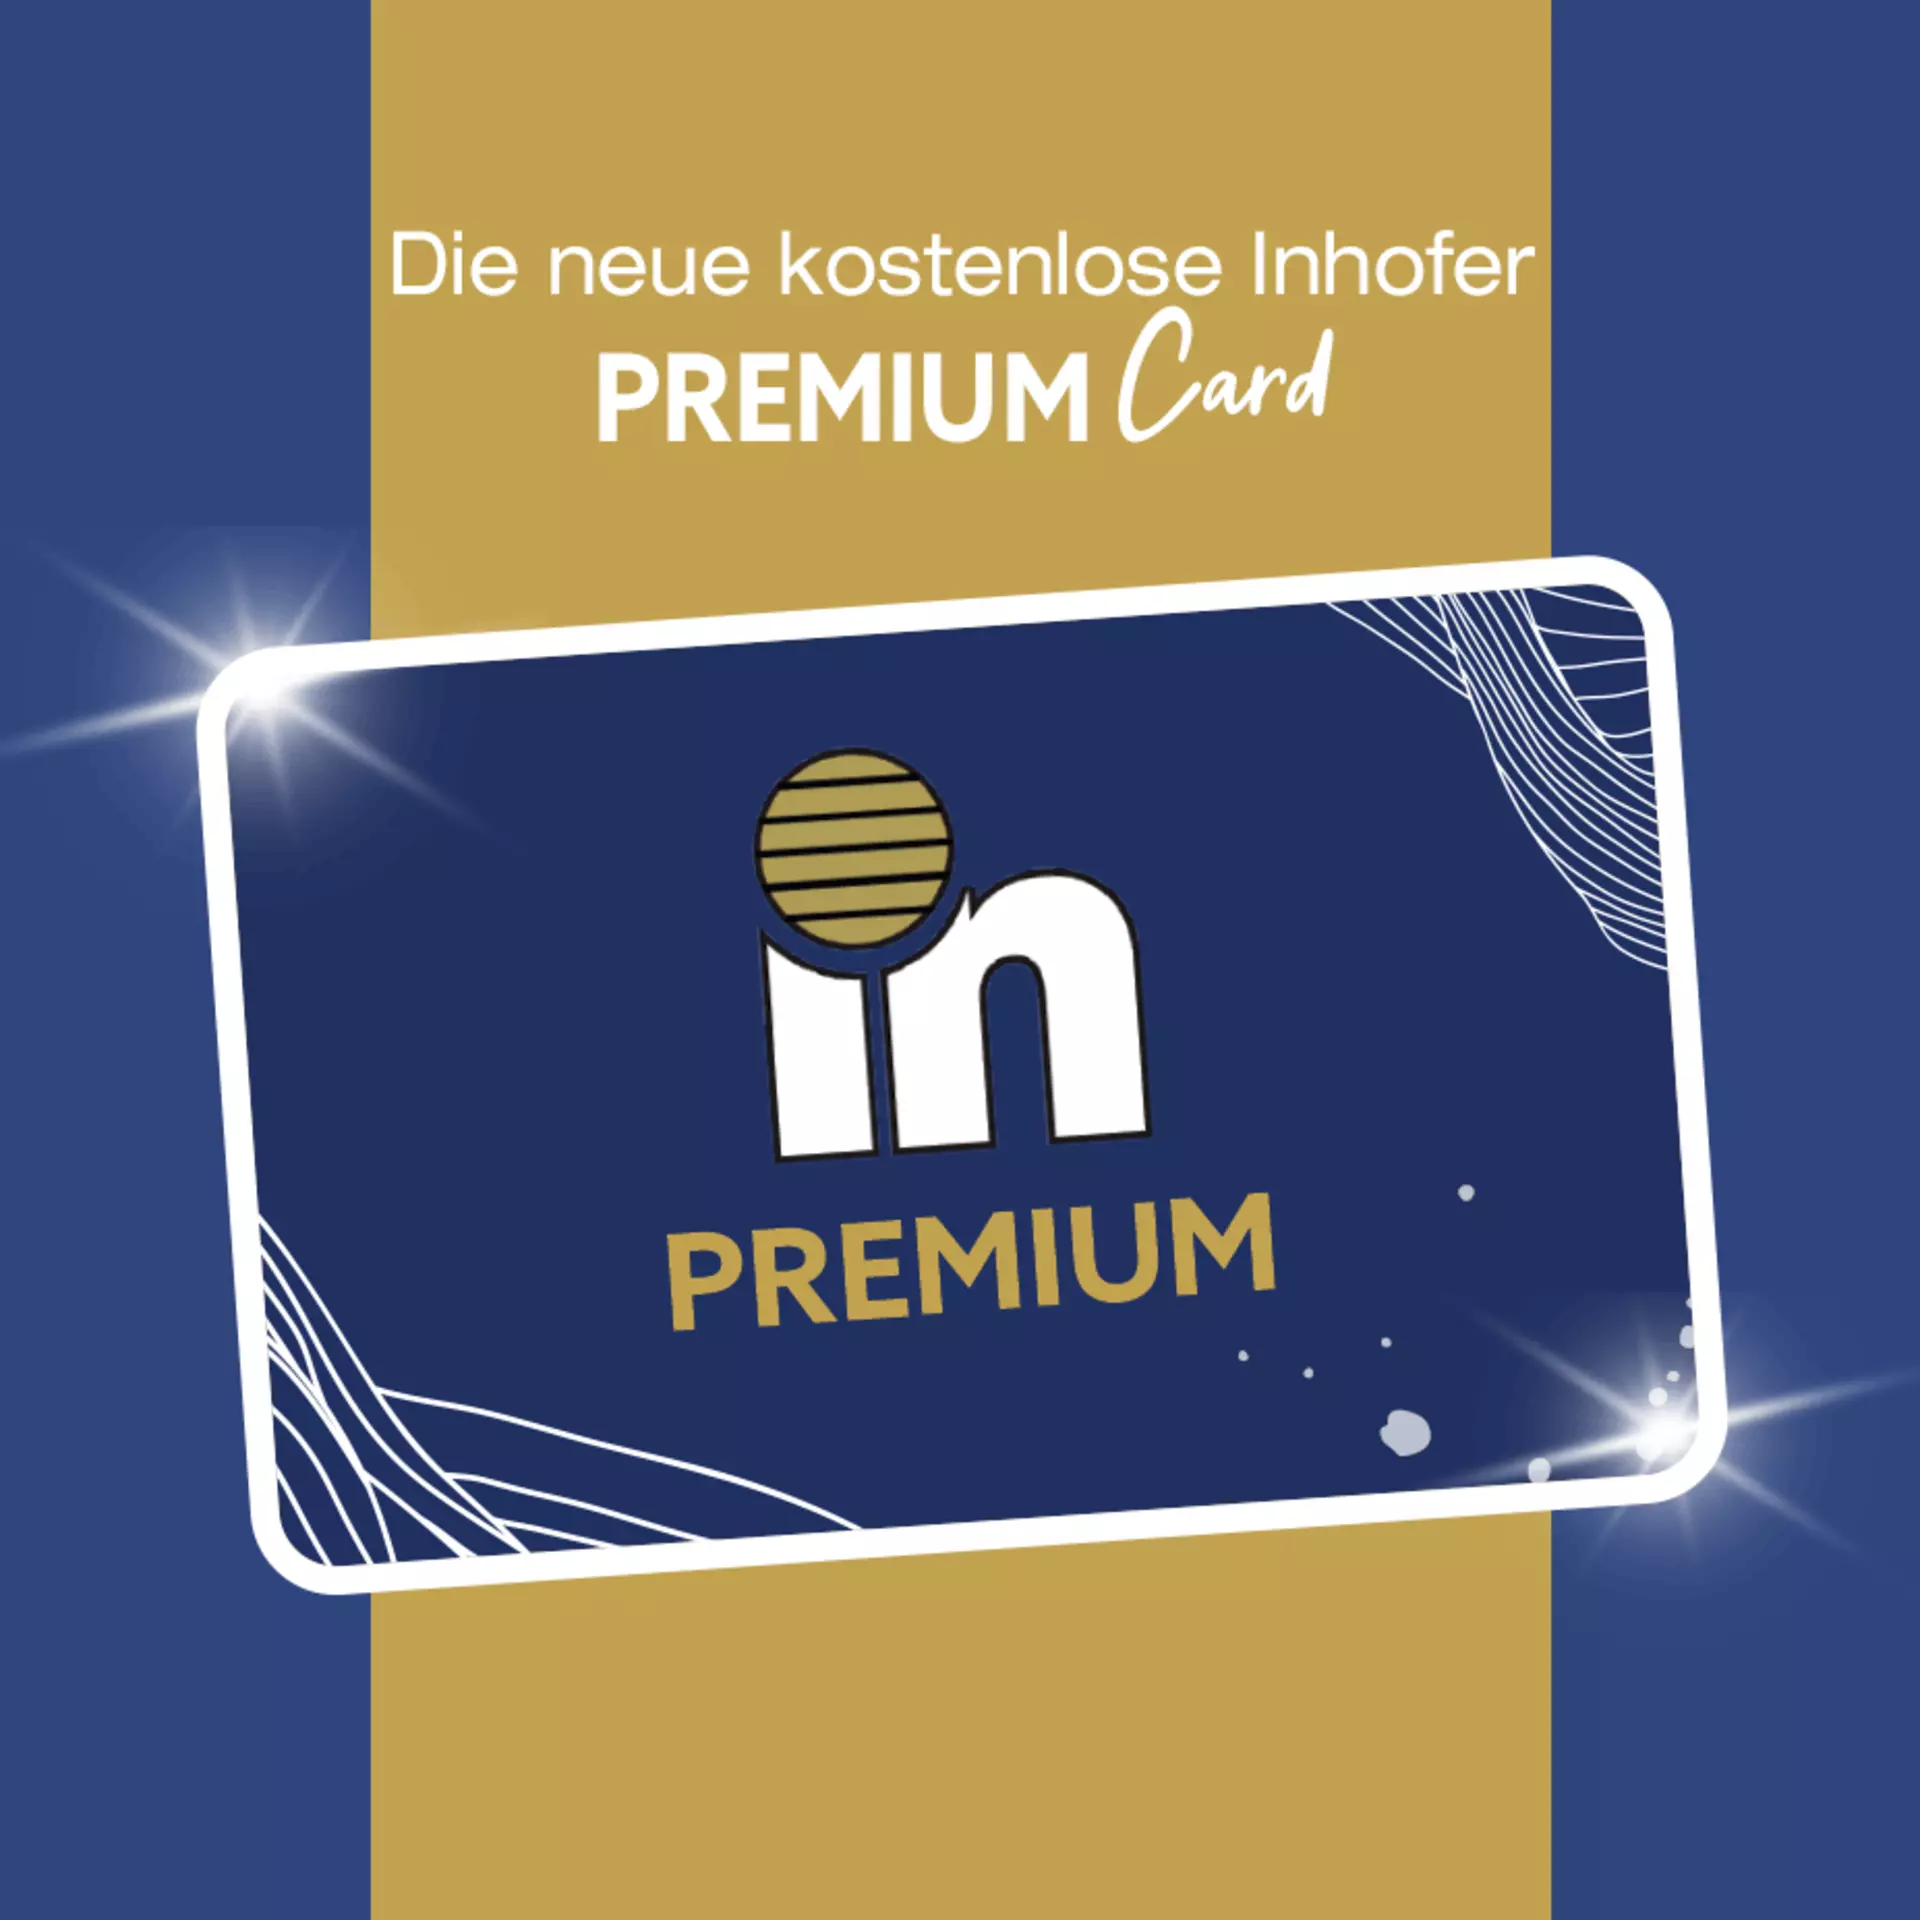 Die neue kostenlose Inhofer PremiumCard - jetzt registrieren und viele Vorteile sichern!